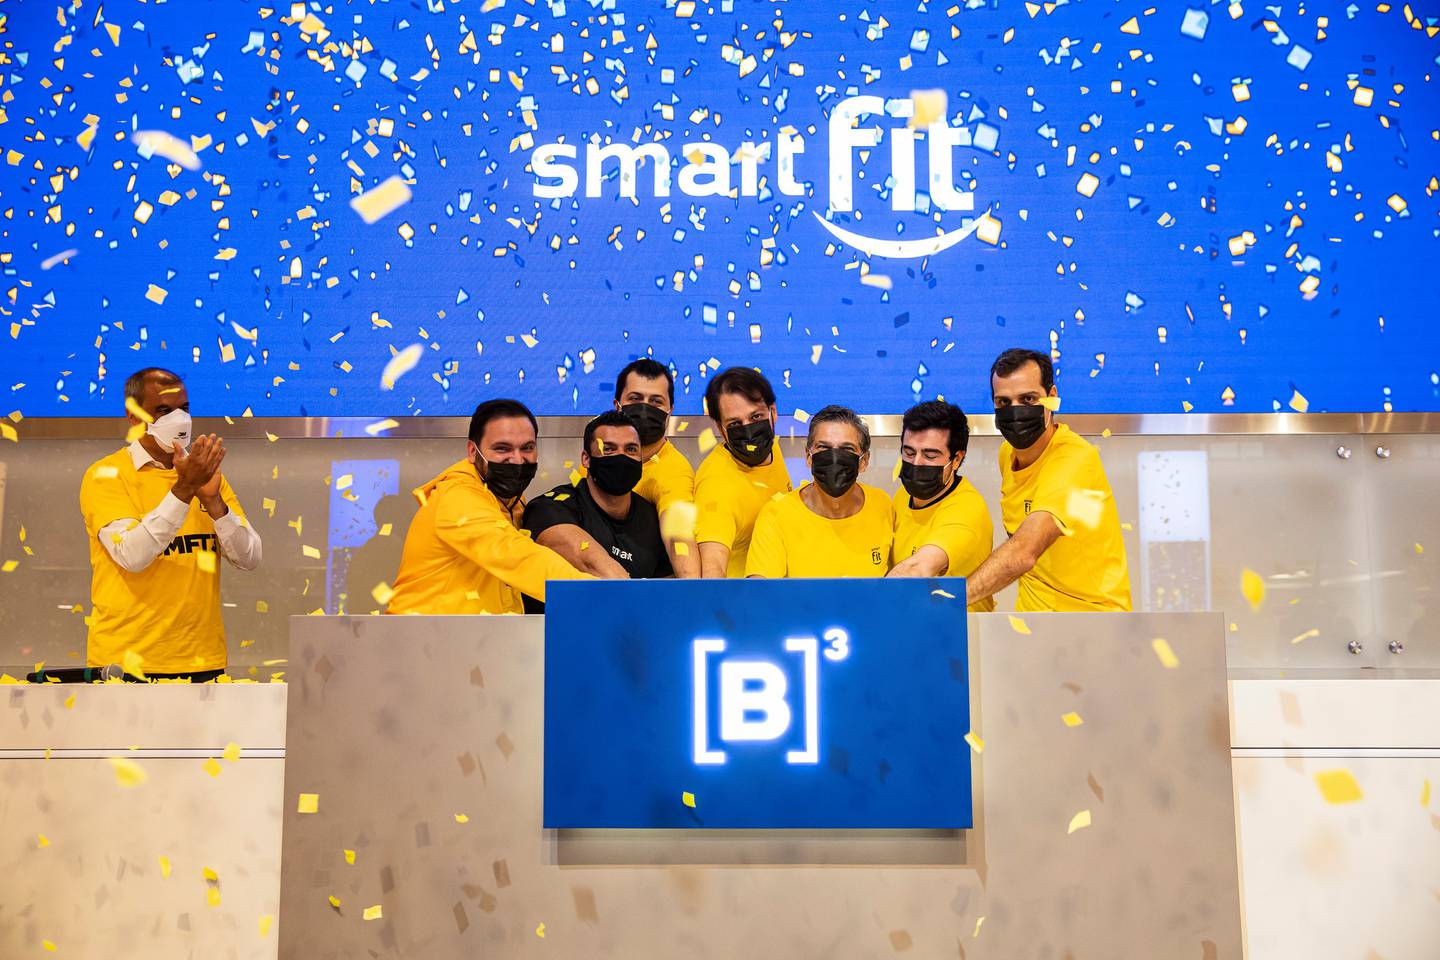 Smart Fit concluiu IPO no dia 14 de julho. Com os recursos, vai financiar seu plano de crescimento. Após sua estreia na Bolsa, a Bluefit pediu registro de oferta inicial de ações